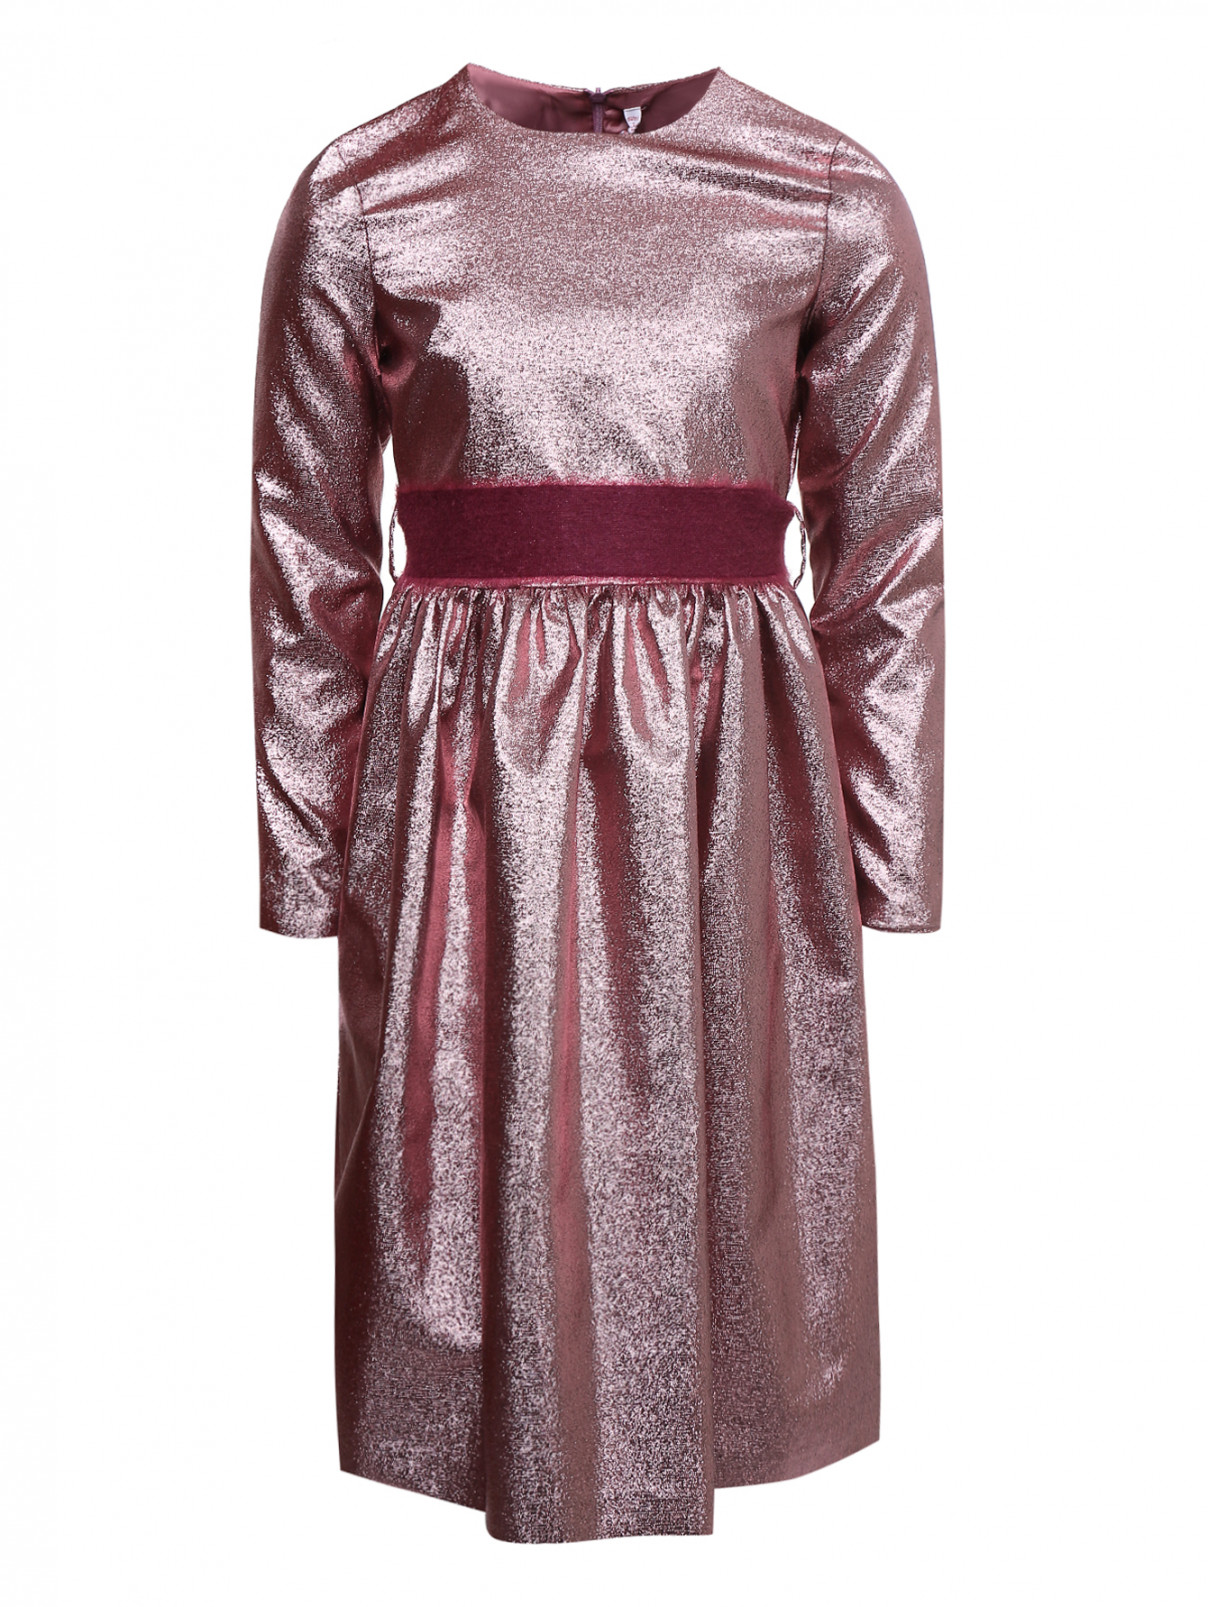 Платье из ткани ламэ с поясом Il Gufo  –  Общий вид  – Цвет:  Розовый